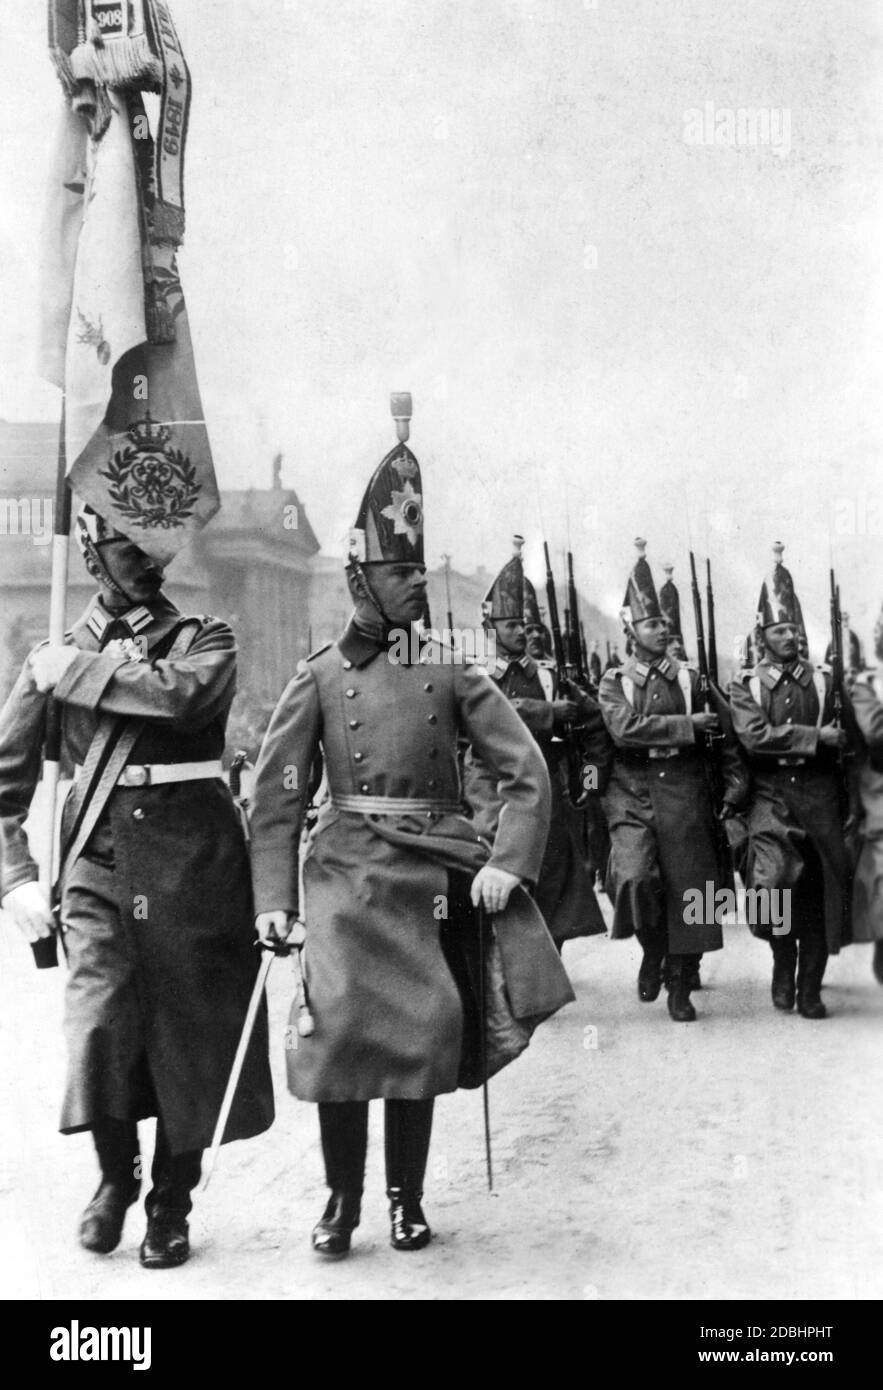 Sfilata della compagnia d'onore del reggimento Kaiser-Alexander-Grenadier(Imperatore Alexander Guards Grenadiers) di fronte alla Zeughaus di Berlino in occasione del compleanno dell'Imperatore Guglielmo II Foto Stock